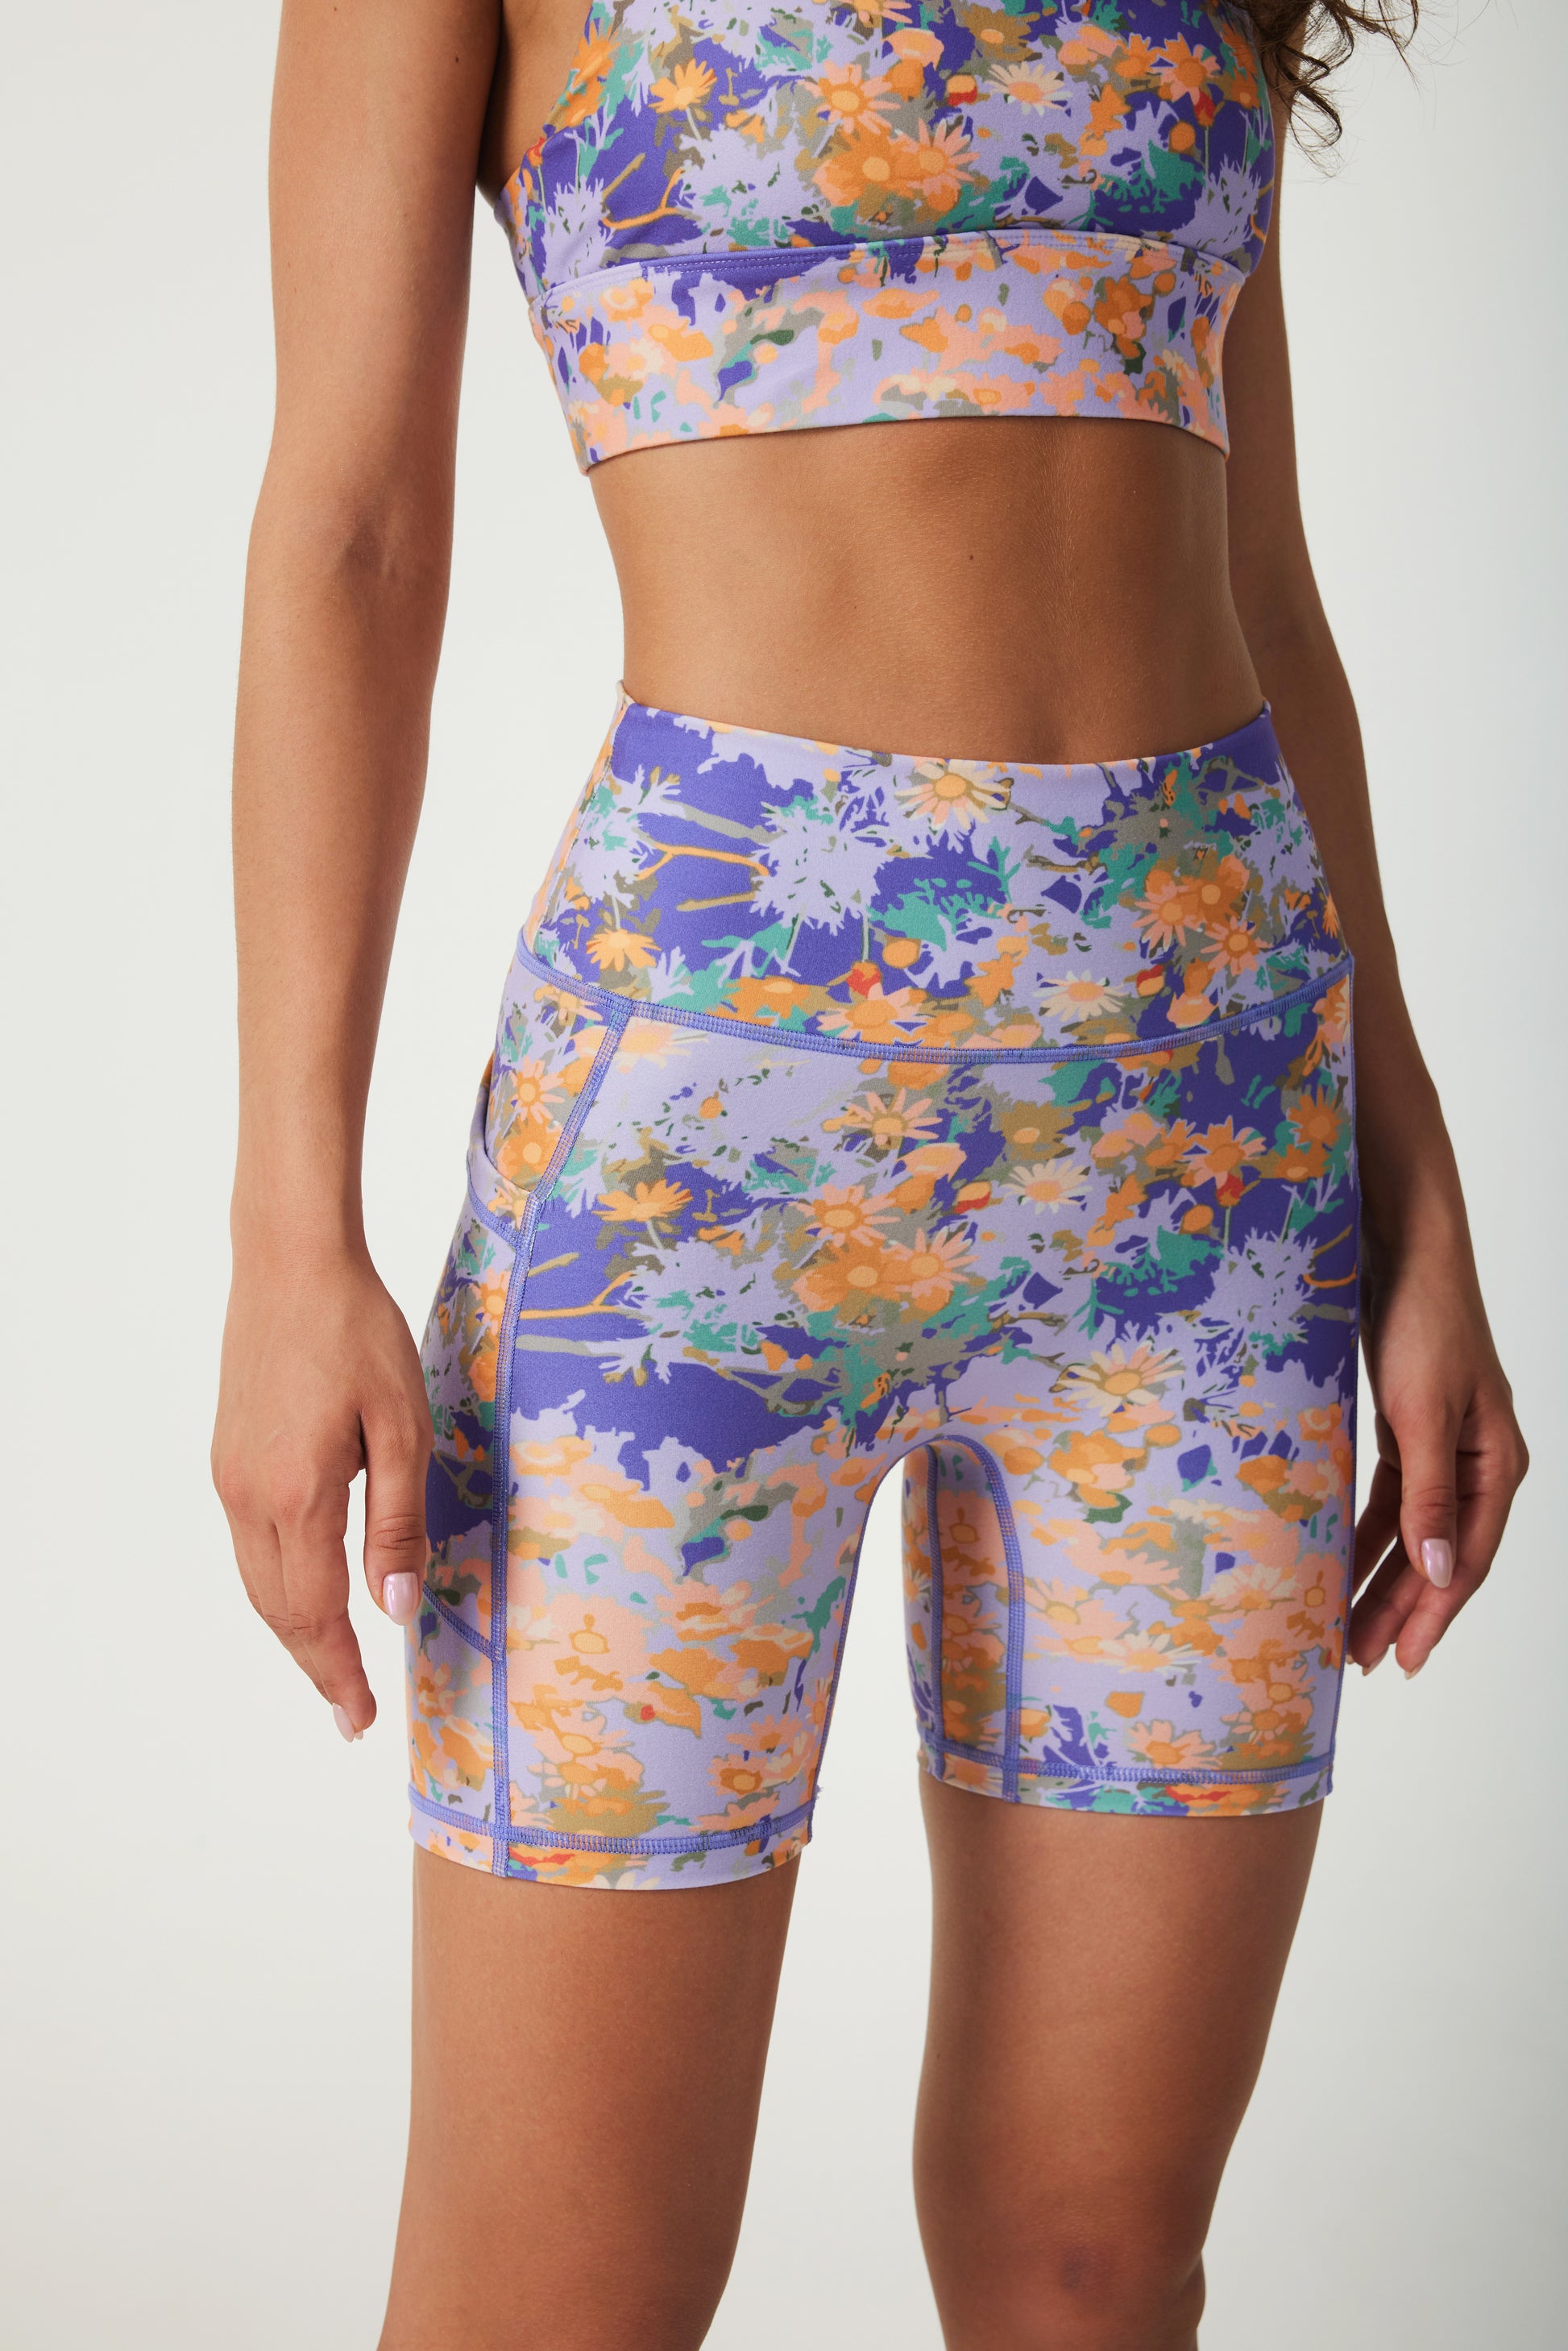 Monet‘s Garden High-waisted Biker Shorts - SILVERWIND